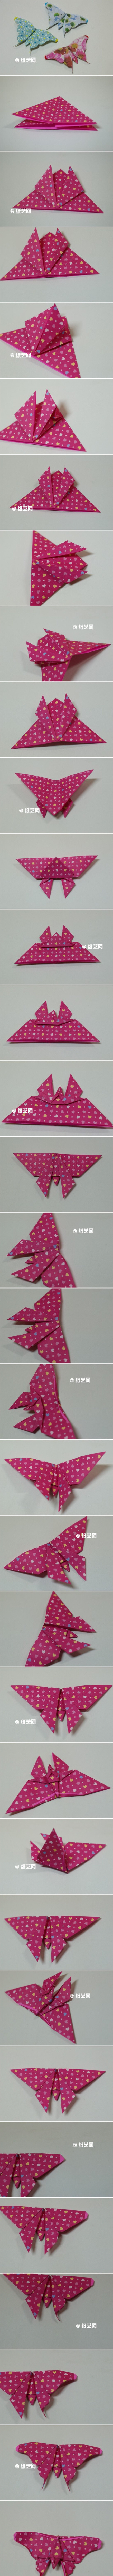 【折纸教程】蝴蝶折纸